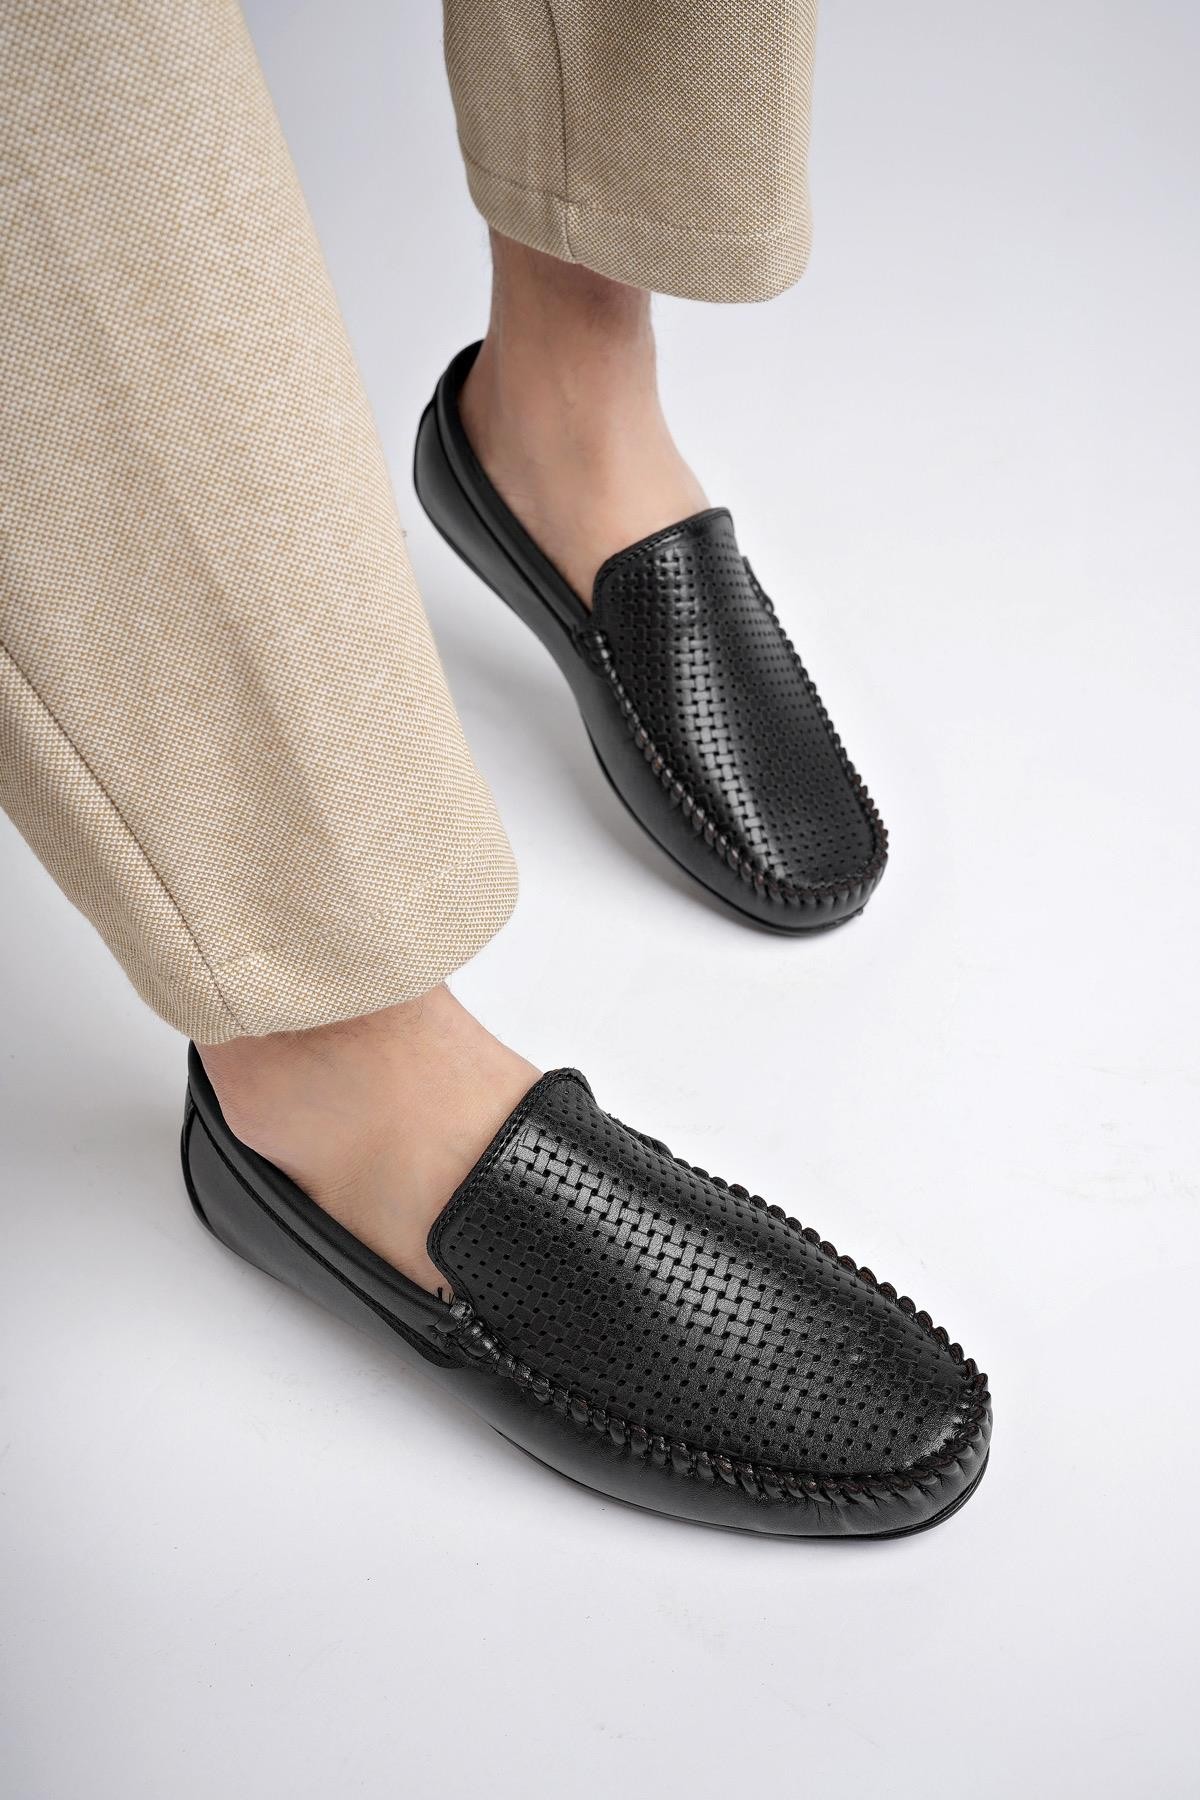 Muggo MB1113 Garantili Erkek Günlük Klasik Casual Rahat Ortopedik Esnek Yazlık Ayakkabı - SİYAH